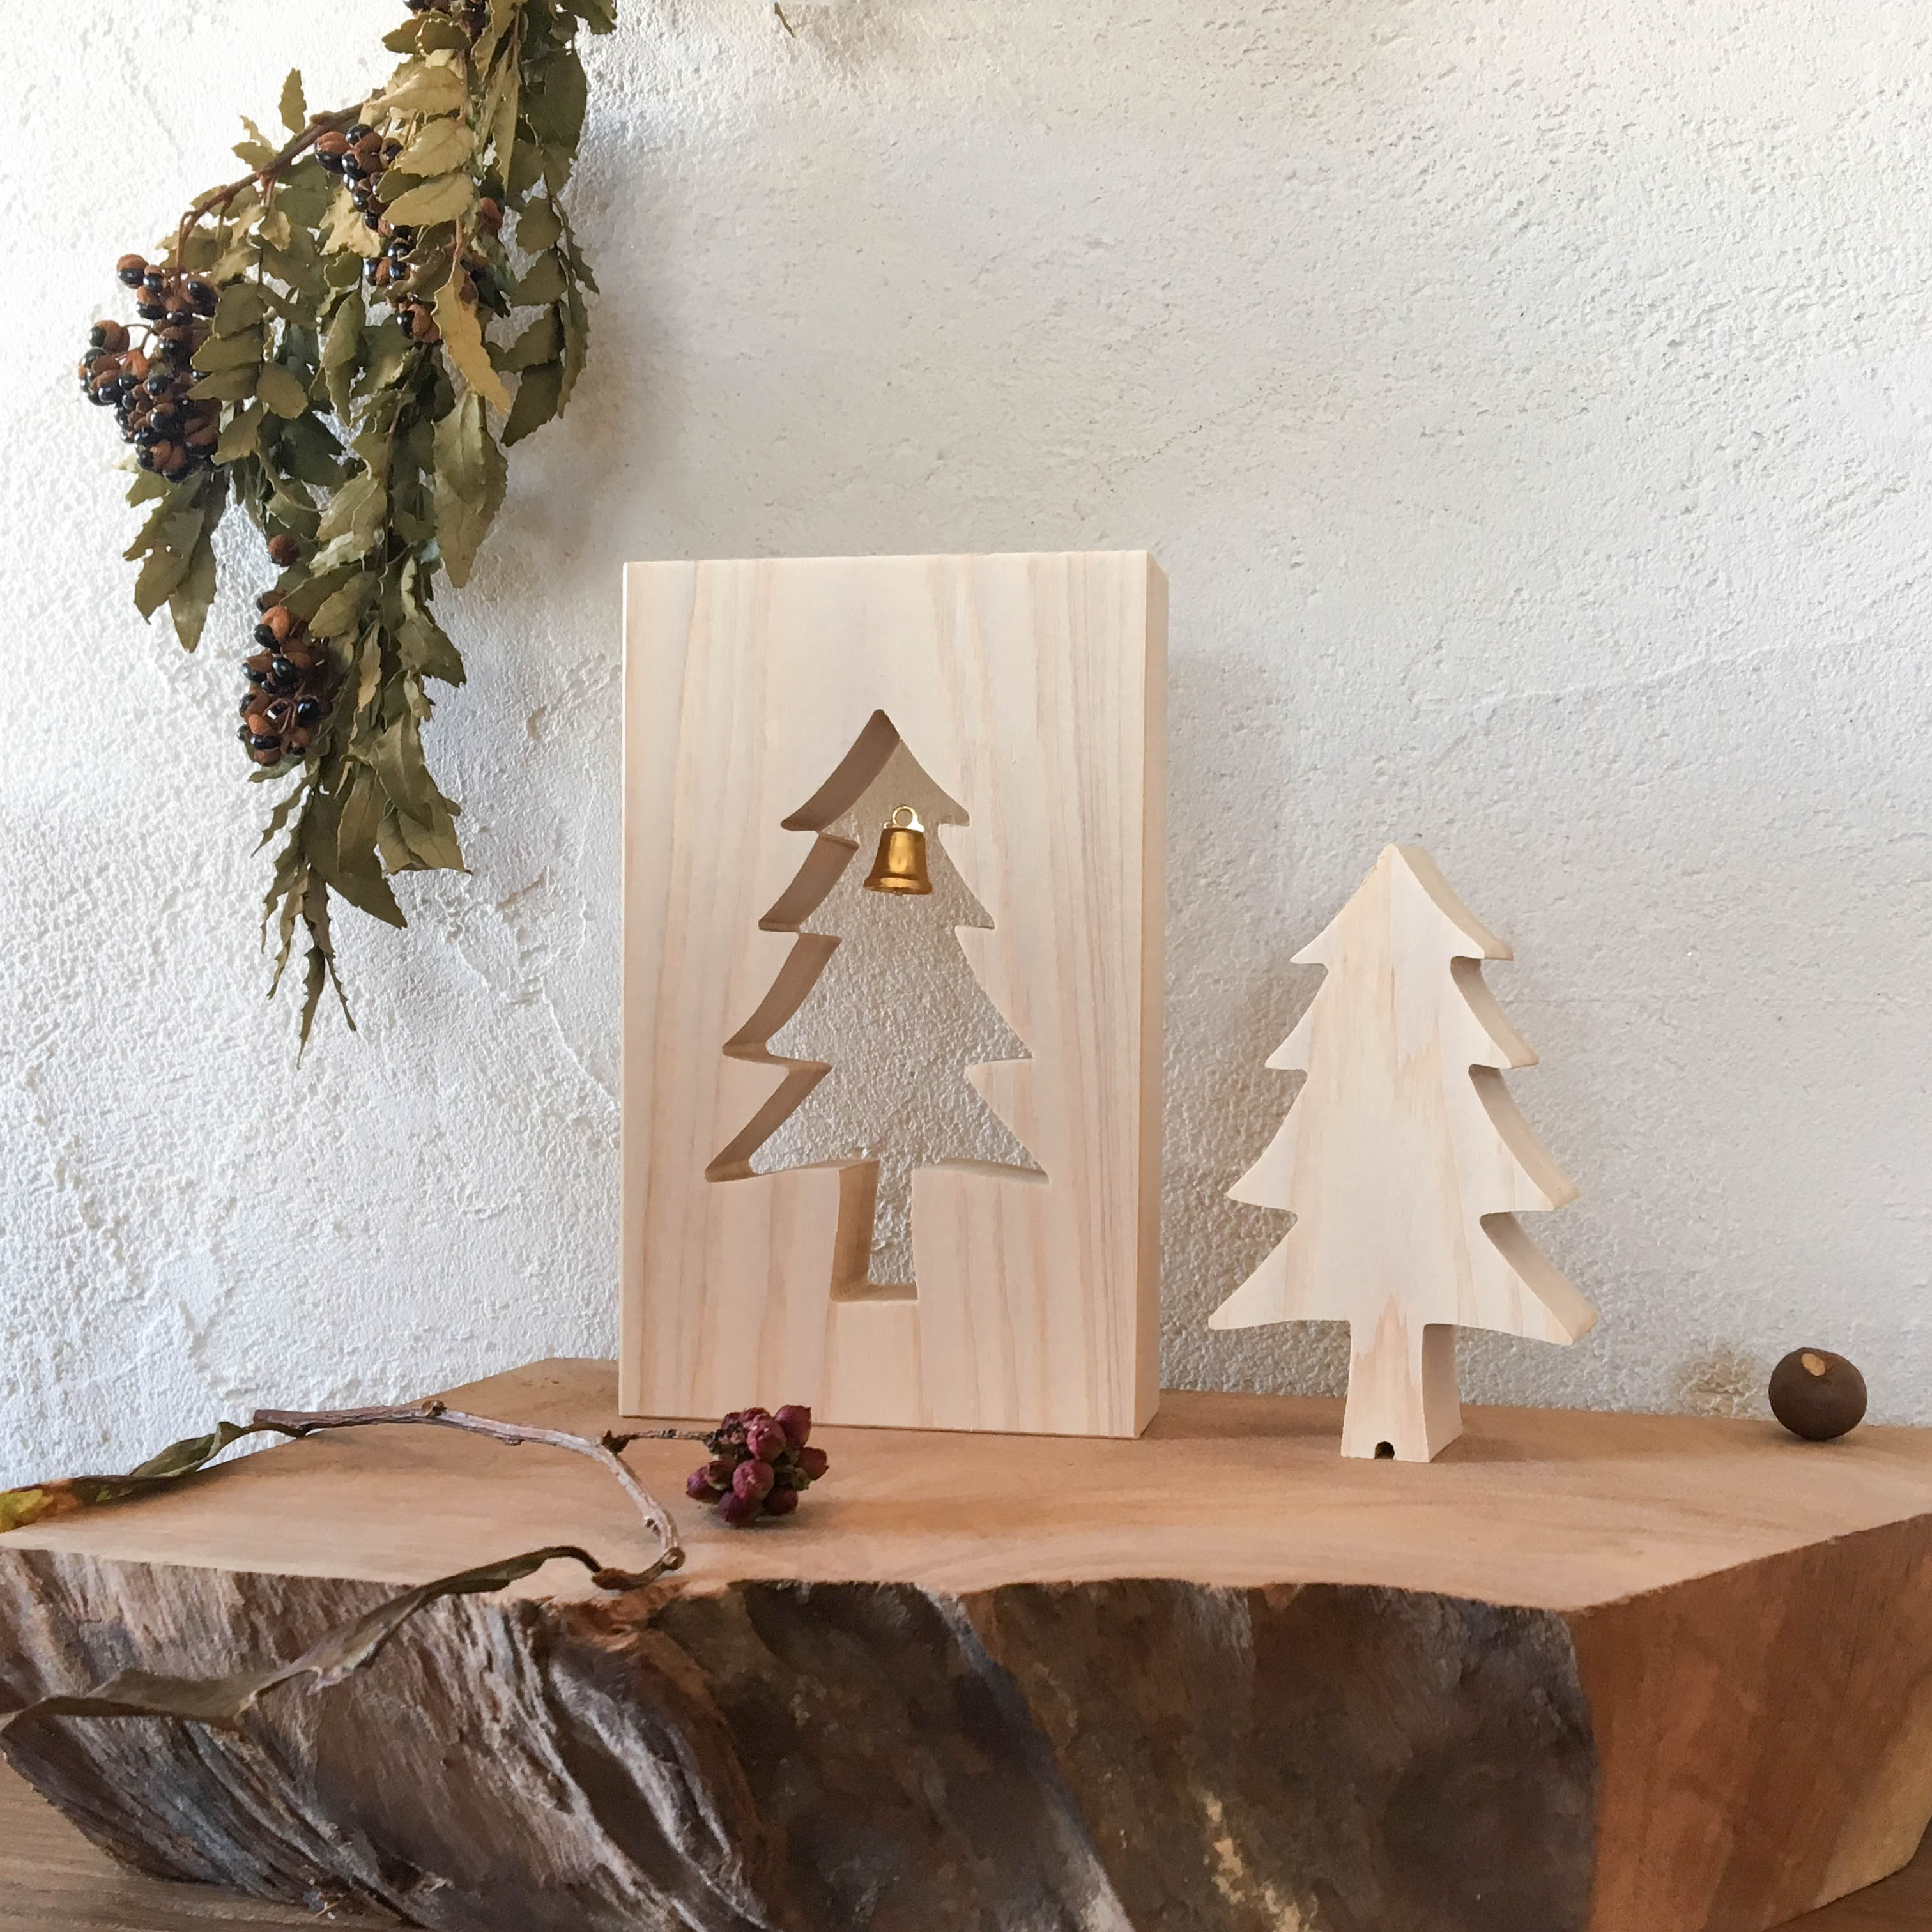 ひのきのクリスマスツリー 木製 ミニツリー Iichi ハンドメイド クラフト作品 手仕事品の通販